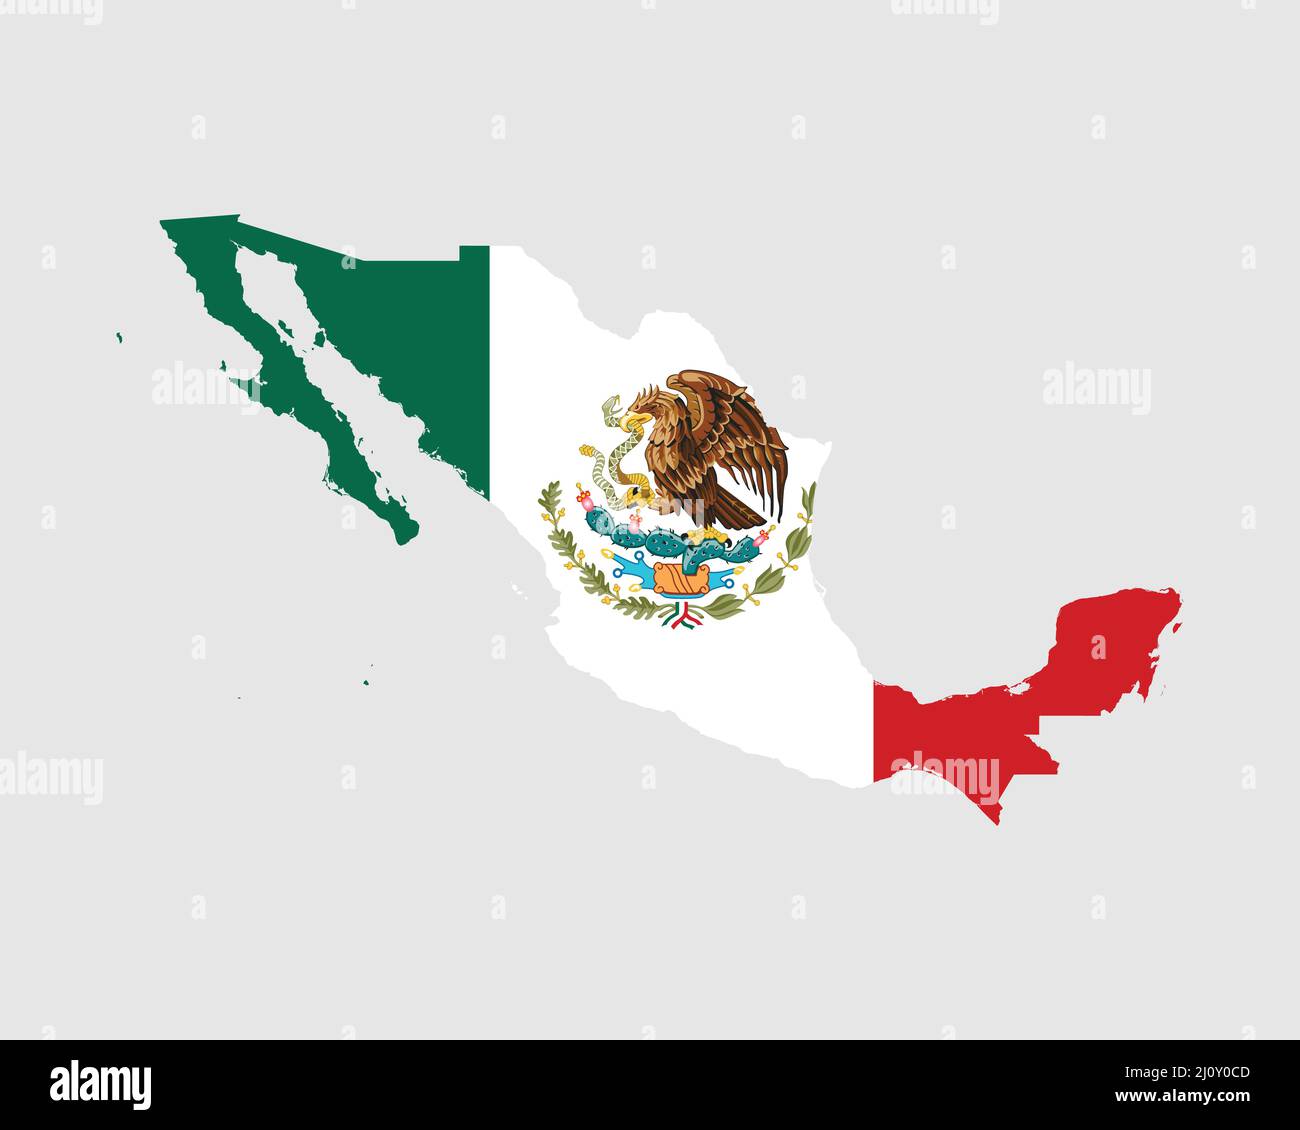 Mexiko Karte Flagge. Karte der Vereinigten Mexikanischen Staaten mit der mexikanischen Nationalflagge isoliert auf weißem Hintergrund. Vektorgrafik. Stock Vektor